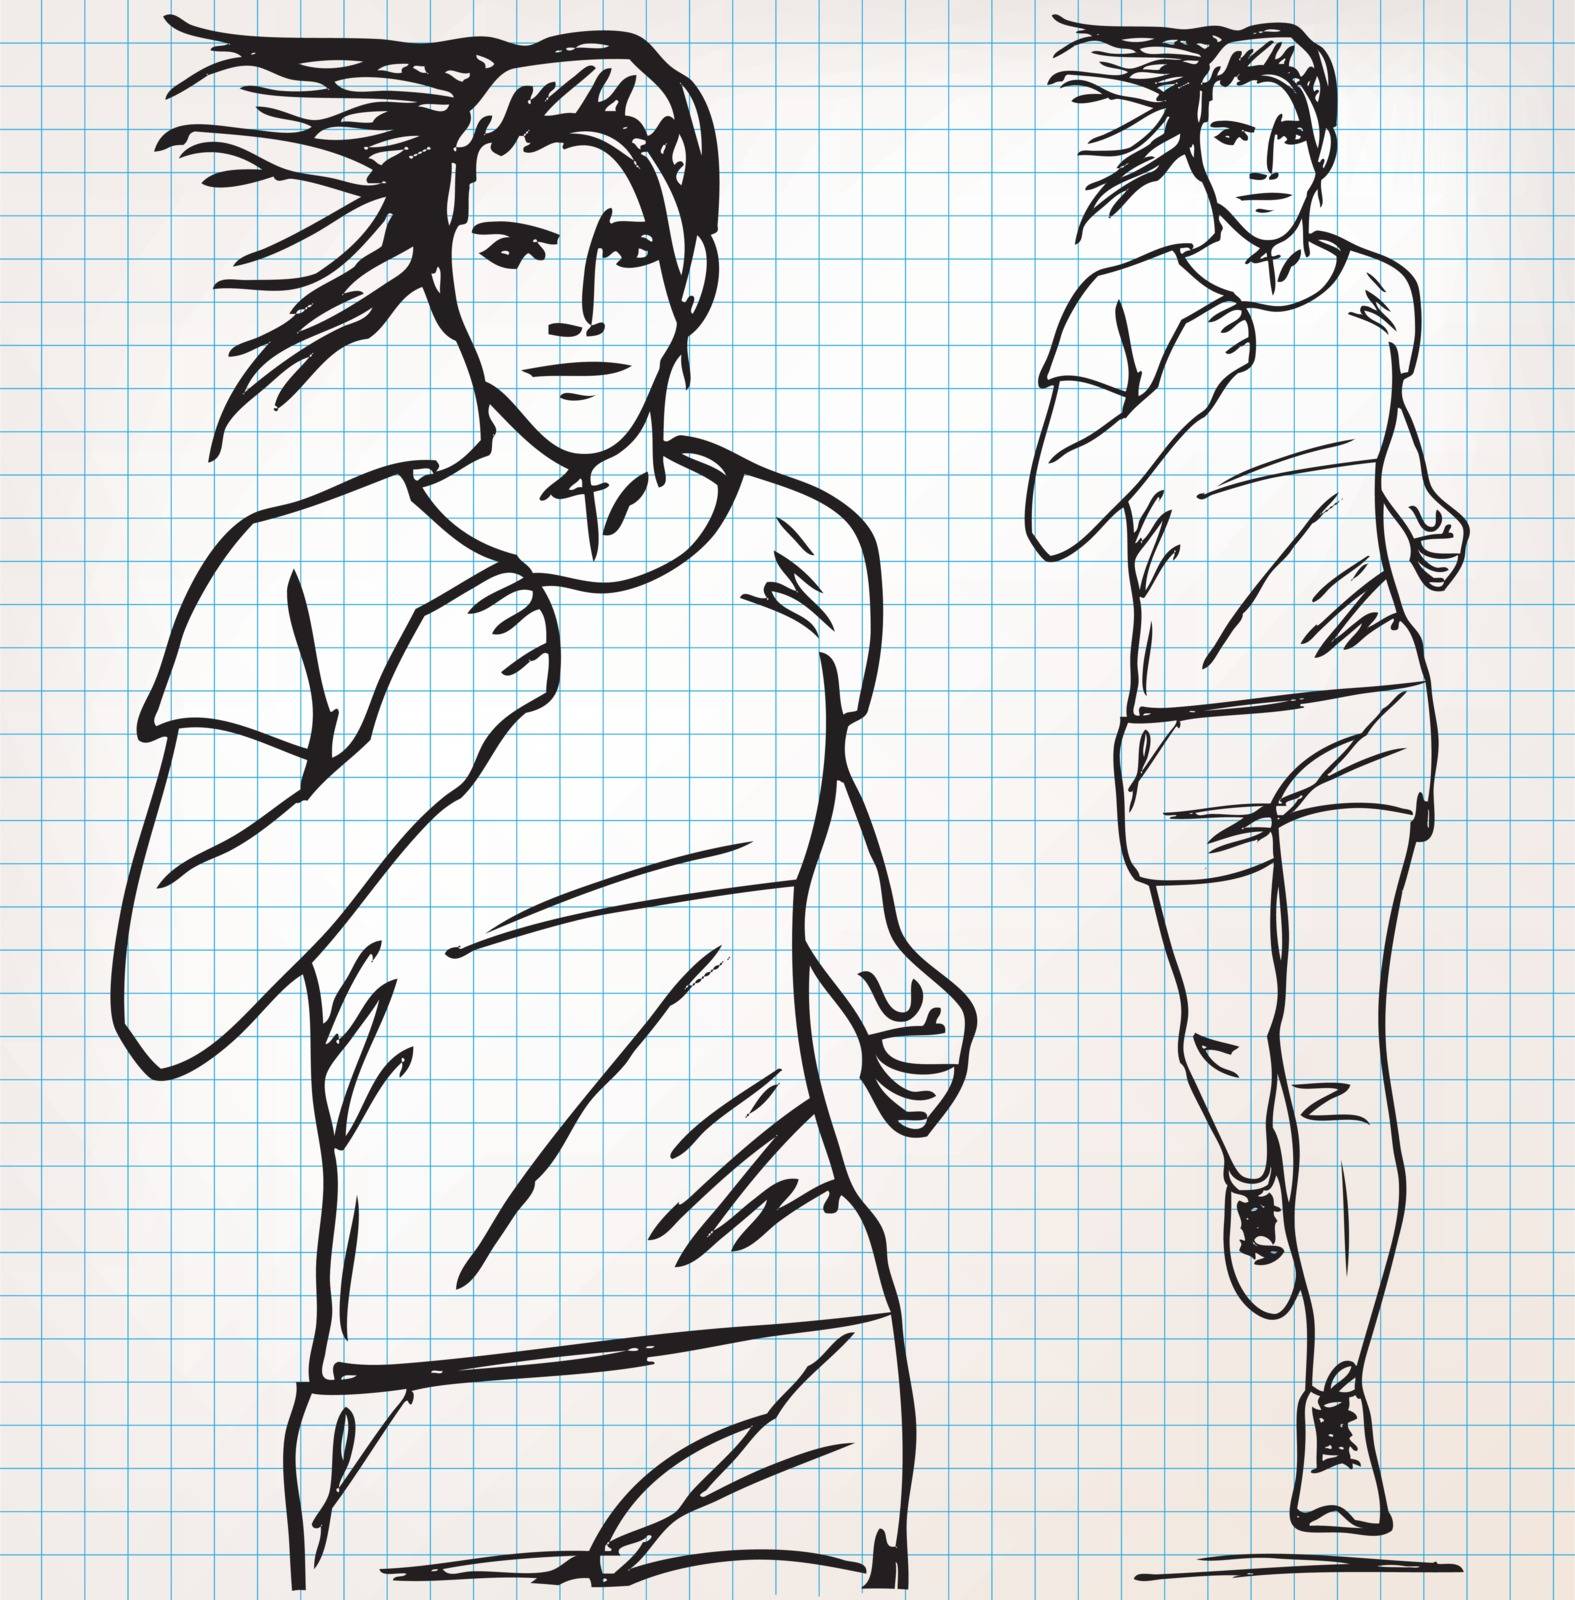 female runner sketch illustration by aroas